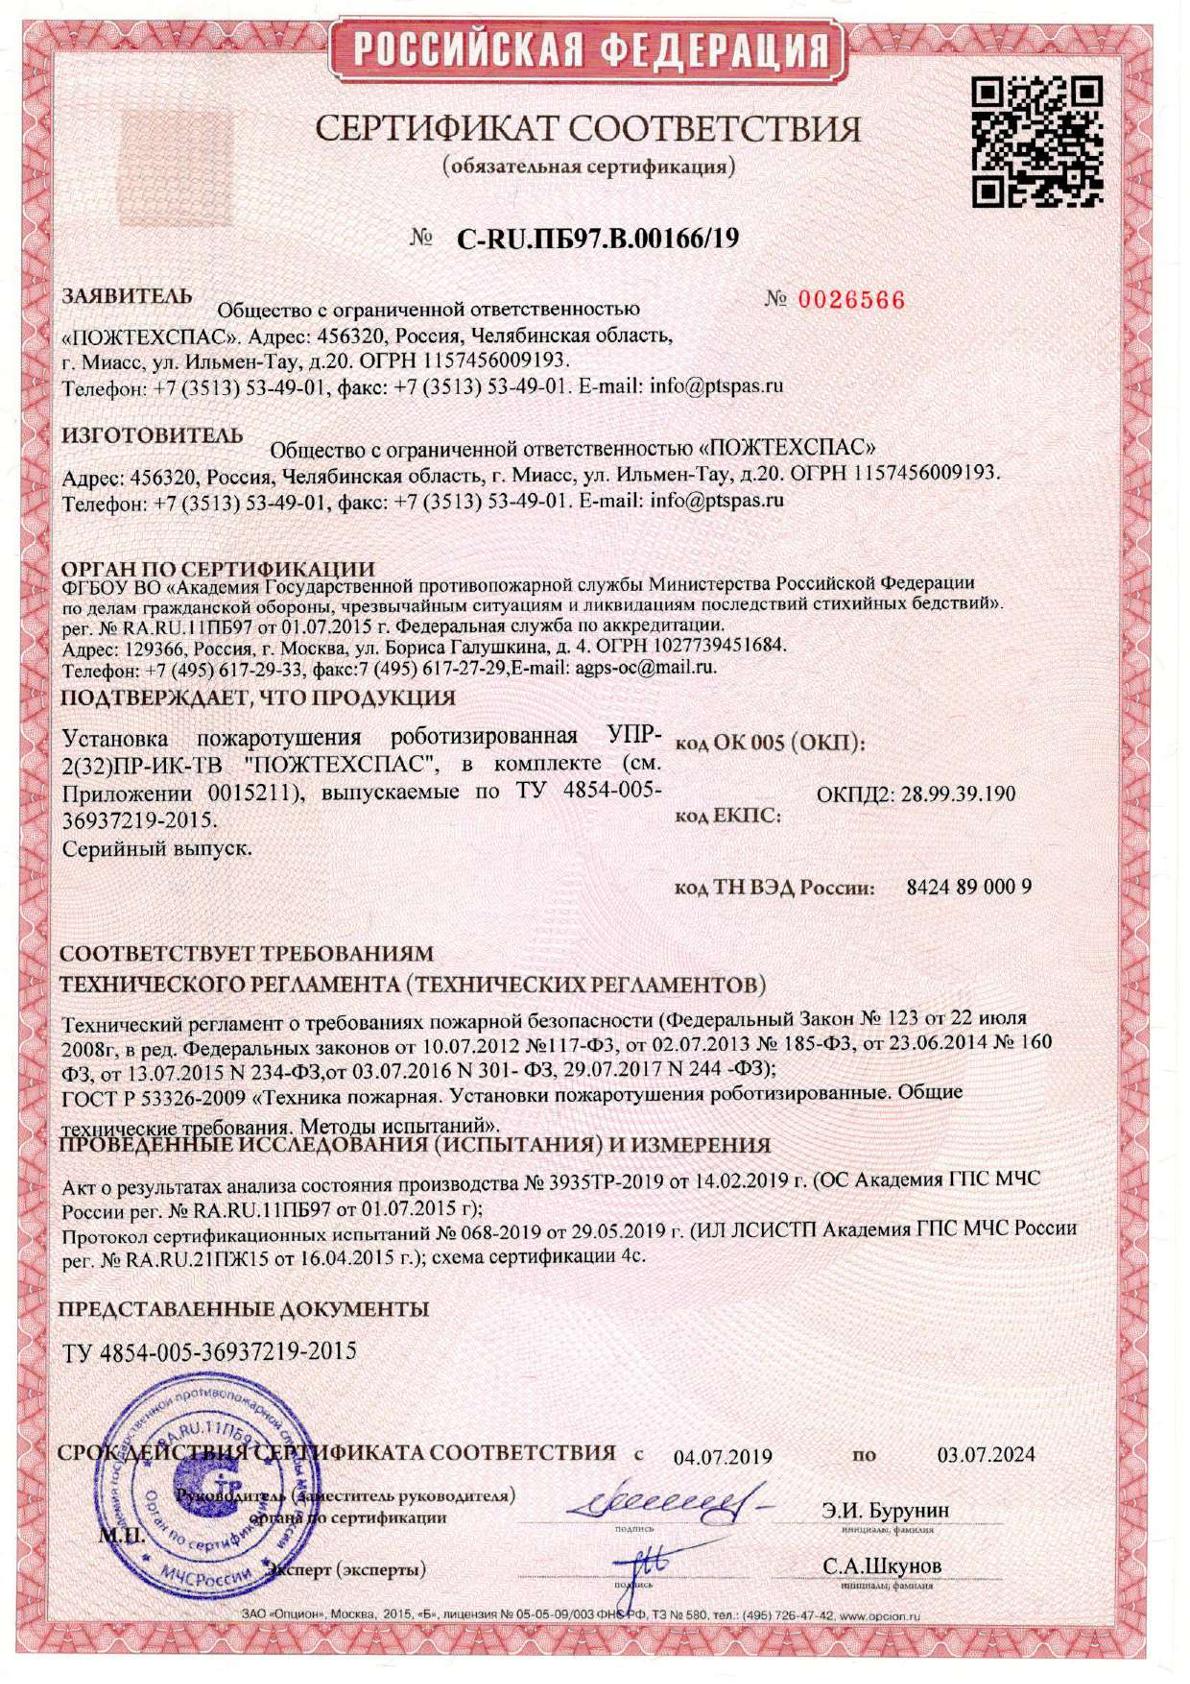 Сертификат соответствия установка пожаротушения роботизированная УПР-2